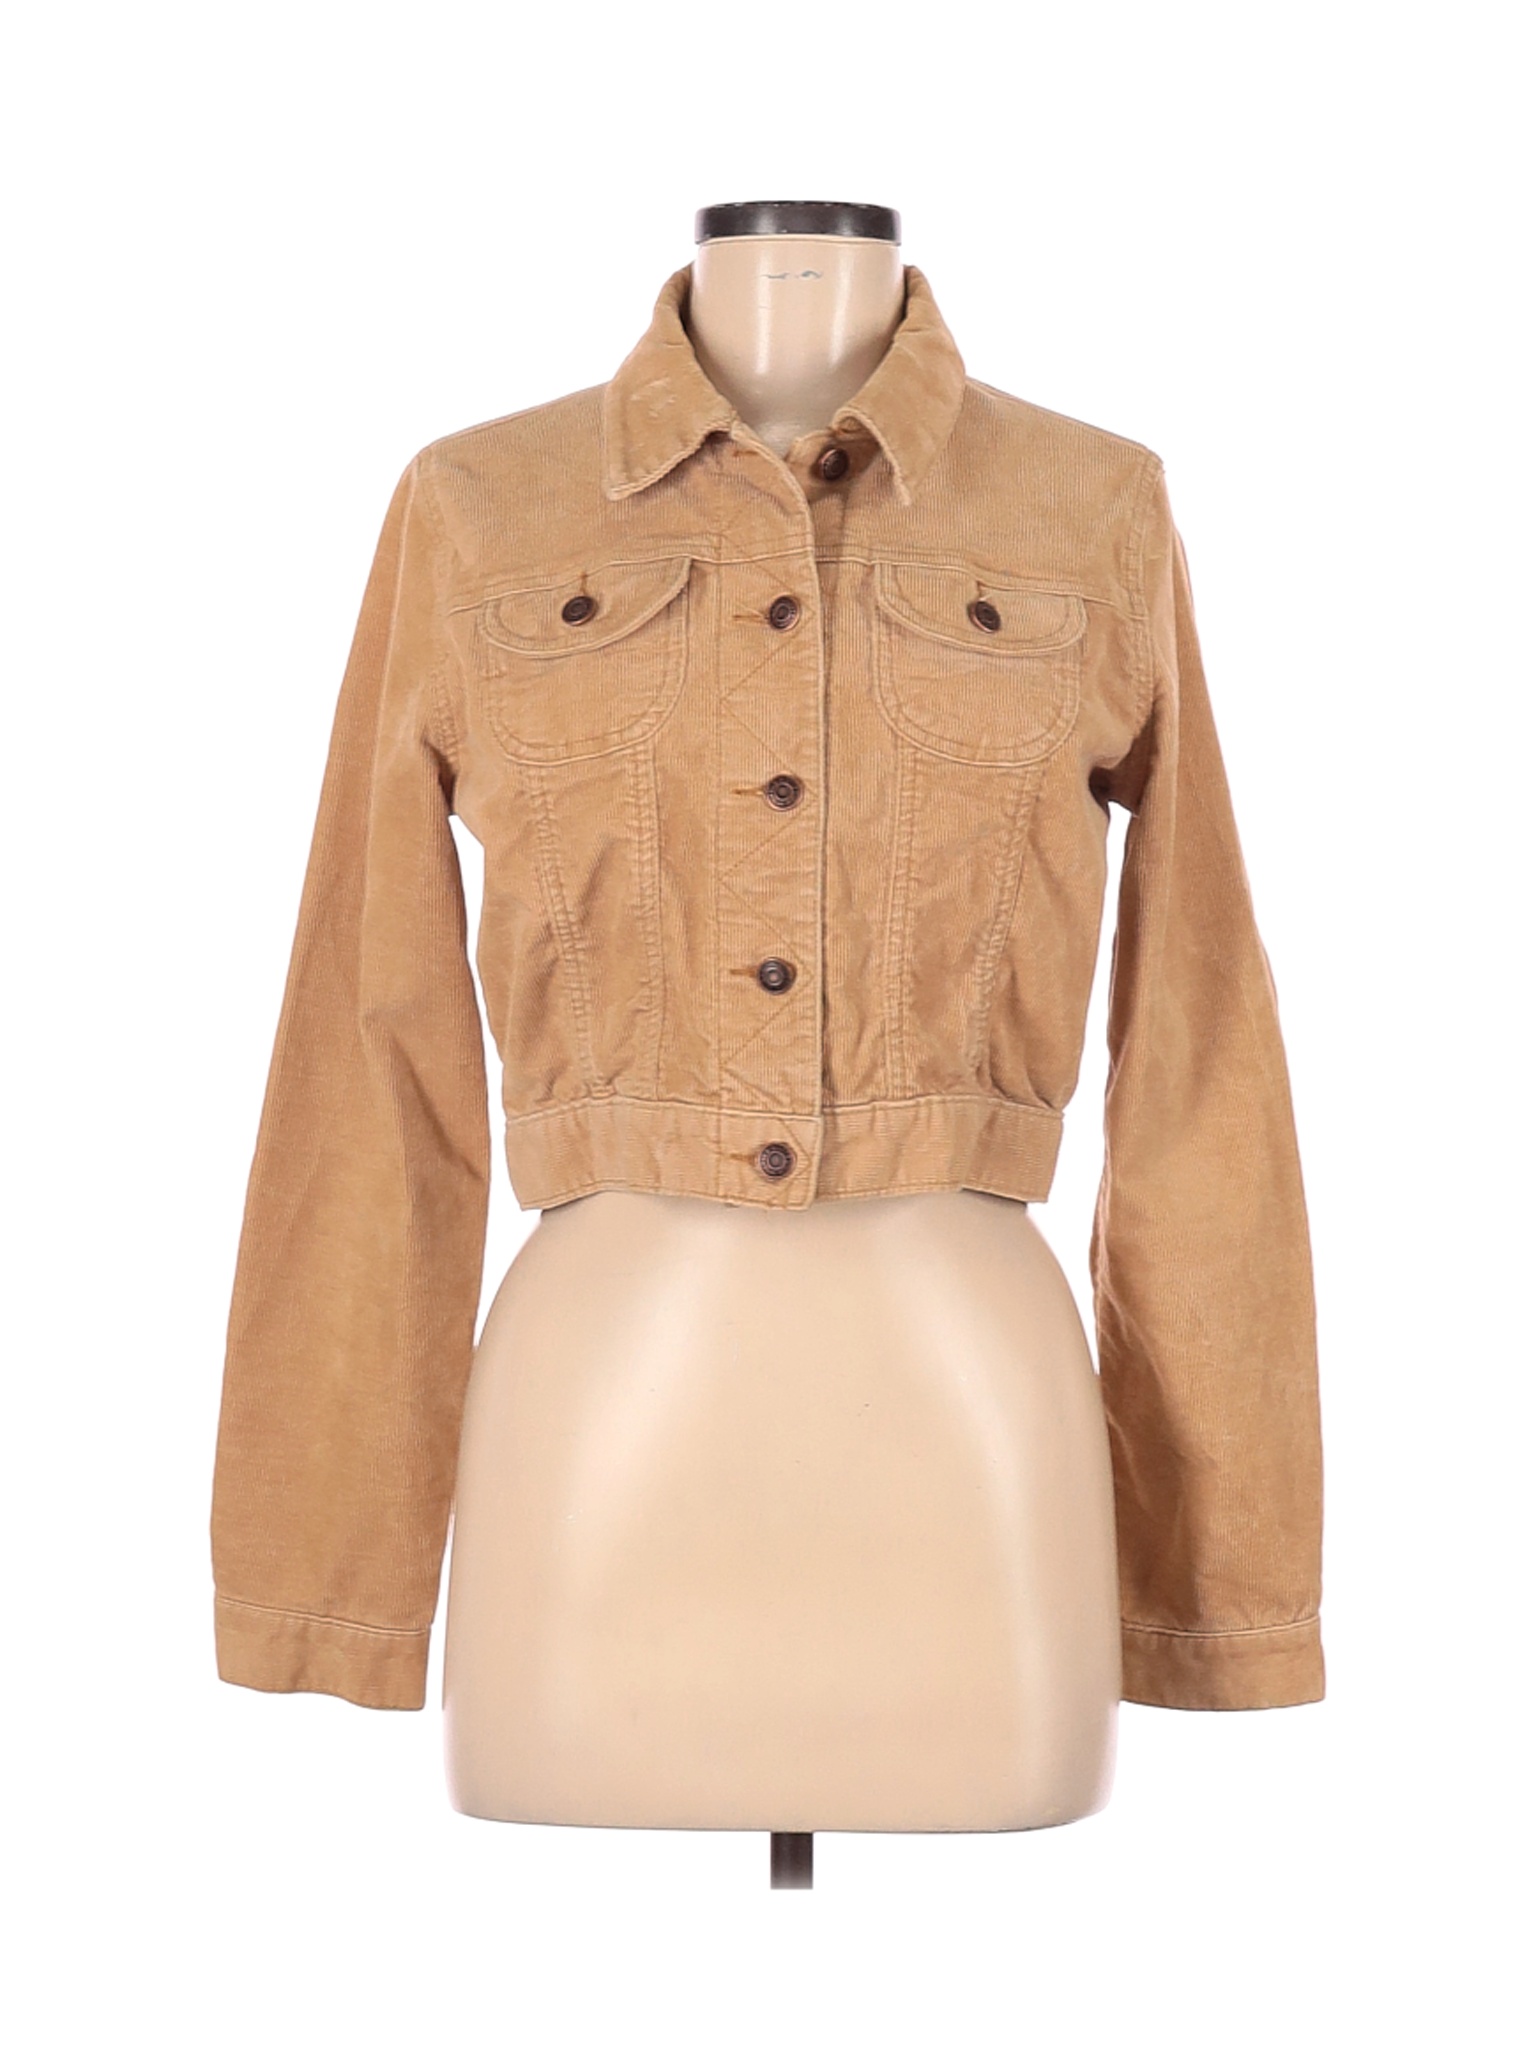 Old Navy Women Brown Denim Jacket M | eBay